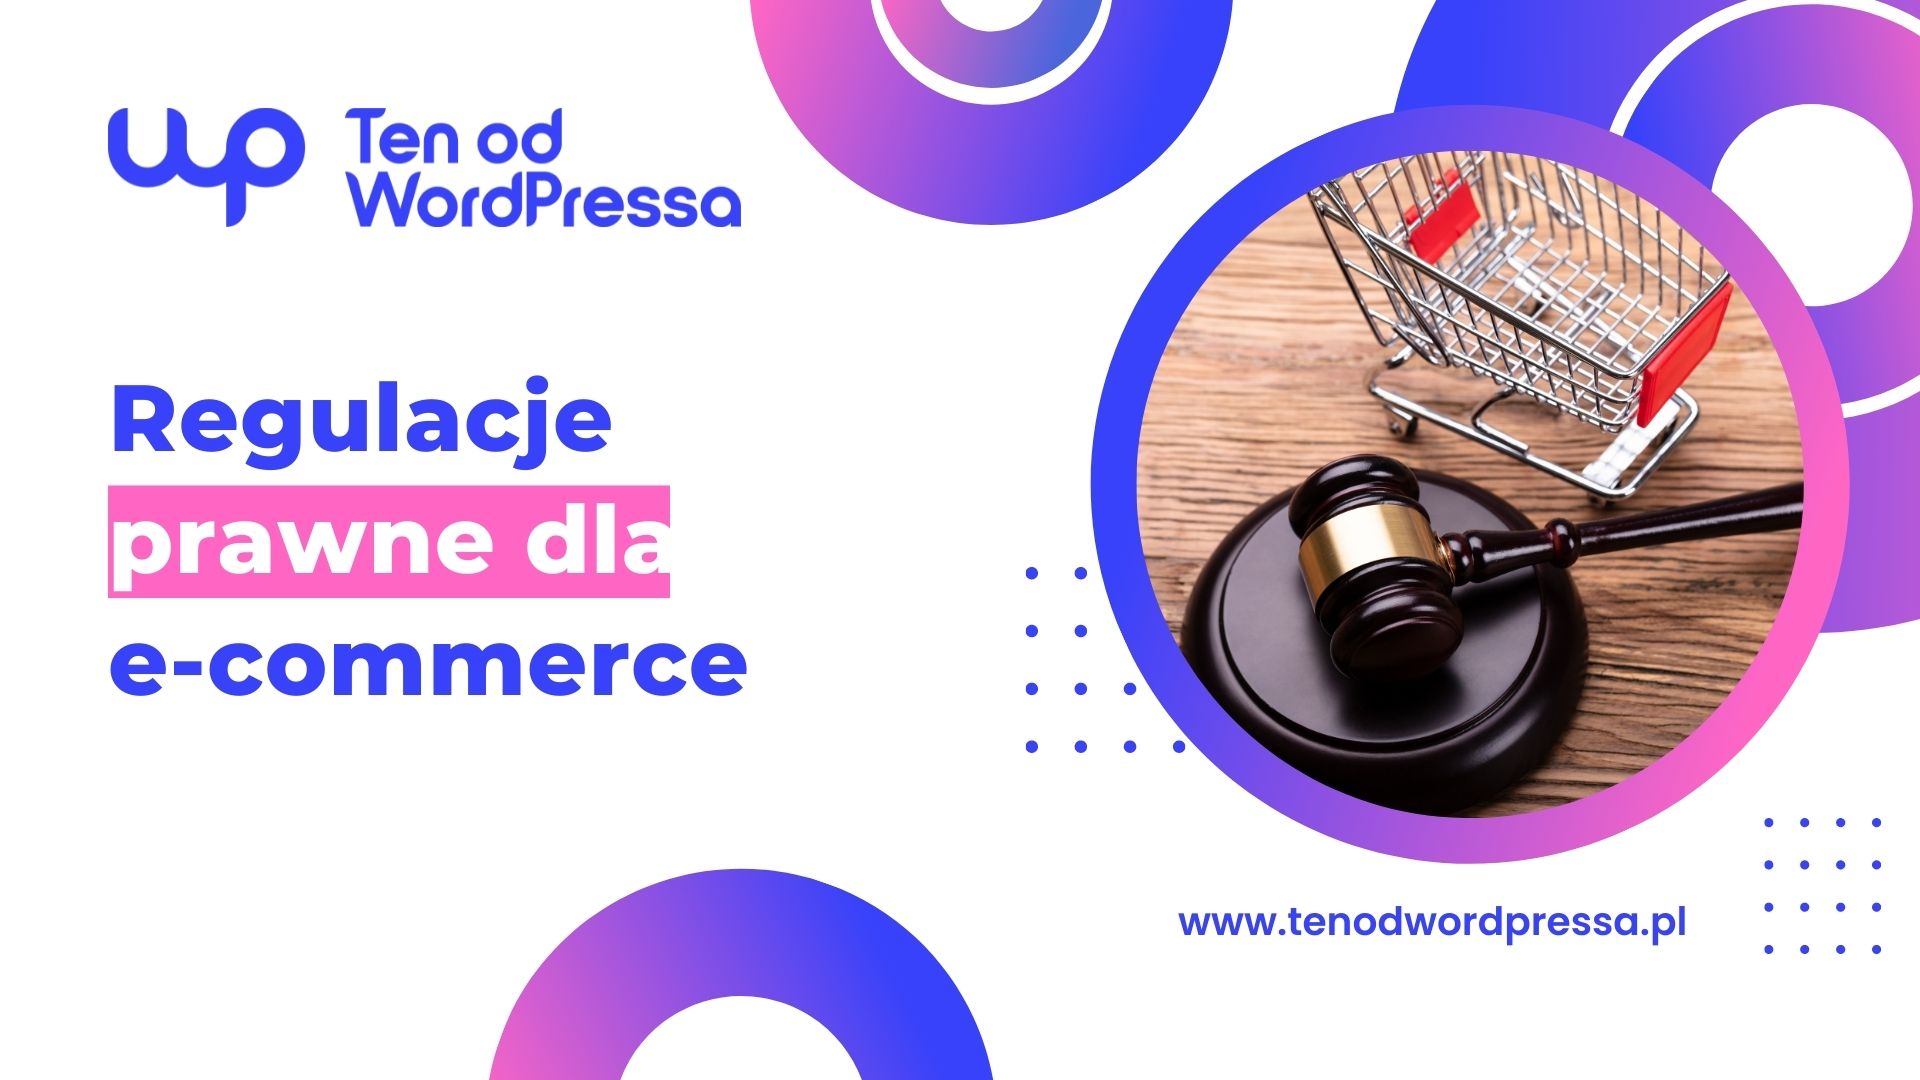 Regulacje prawne dla e-commerce – gotowe narzędzia dla WooCommerce